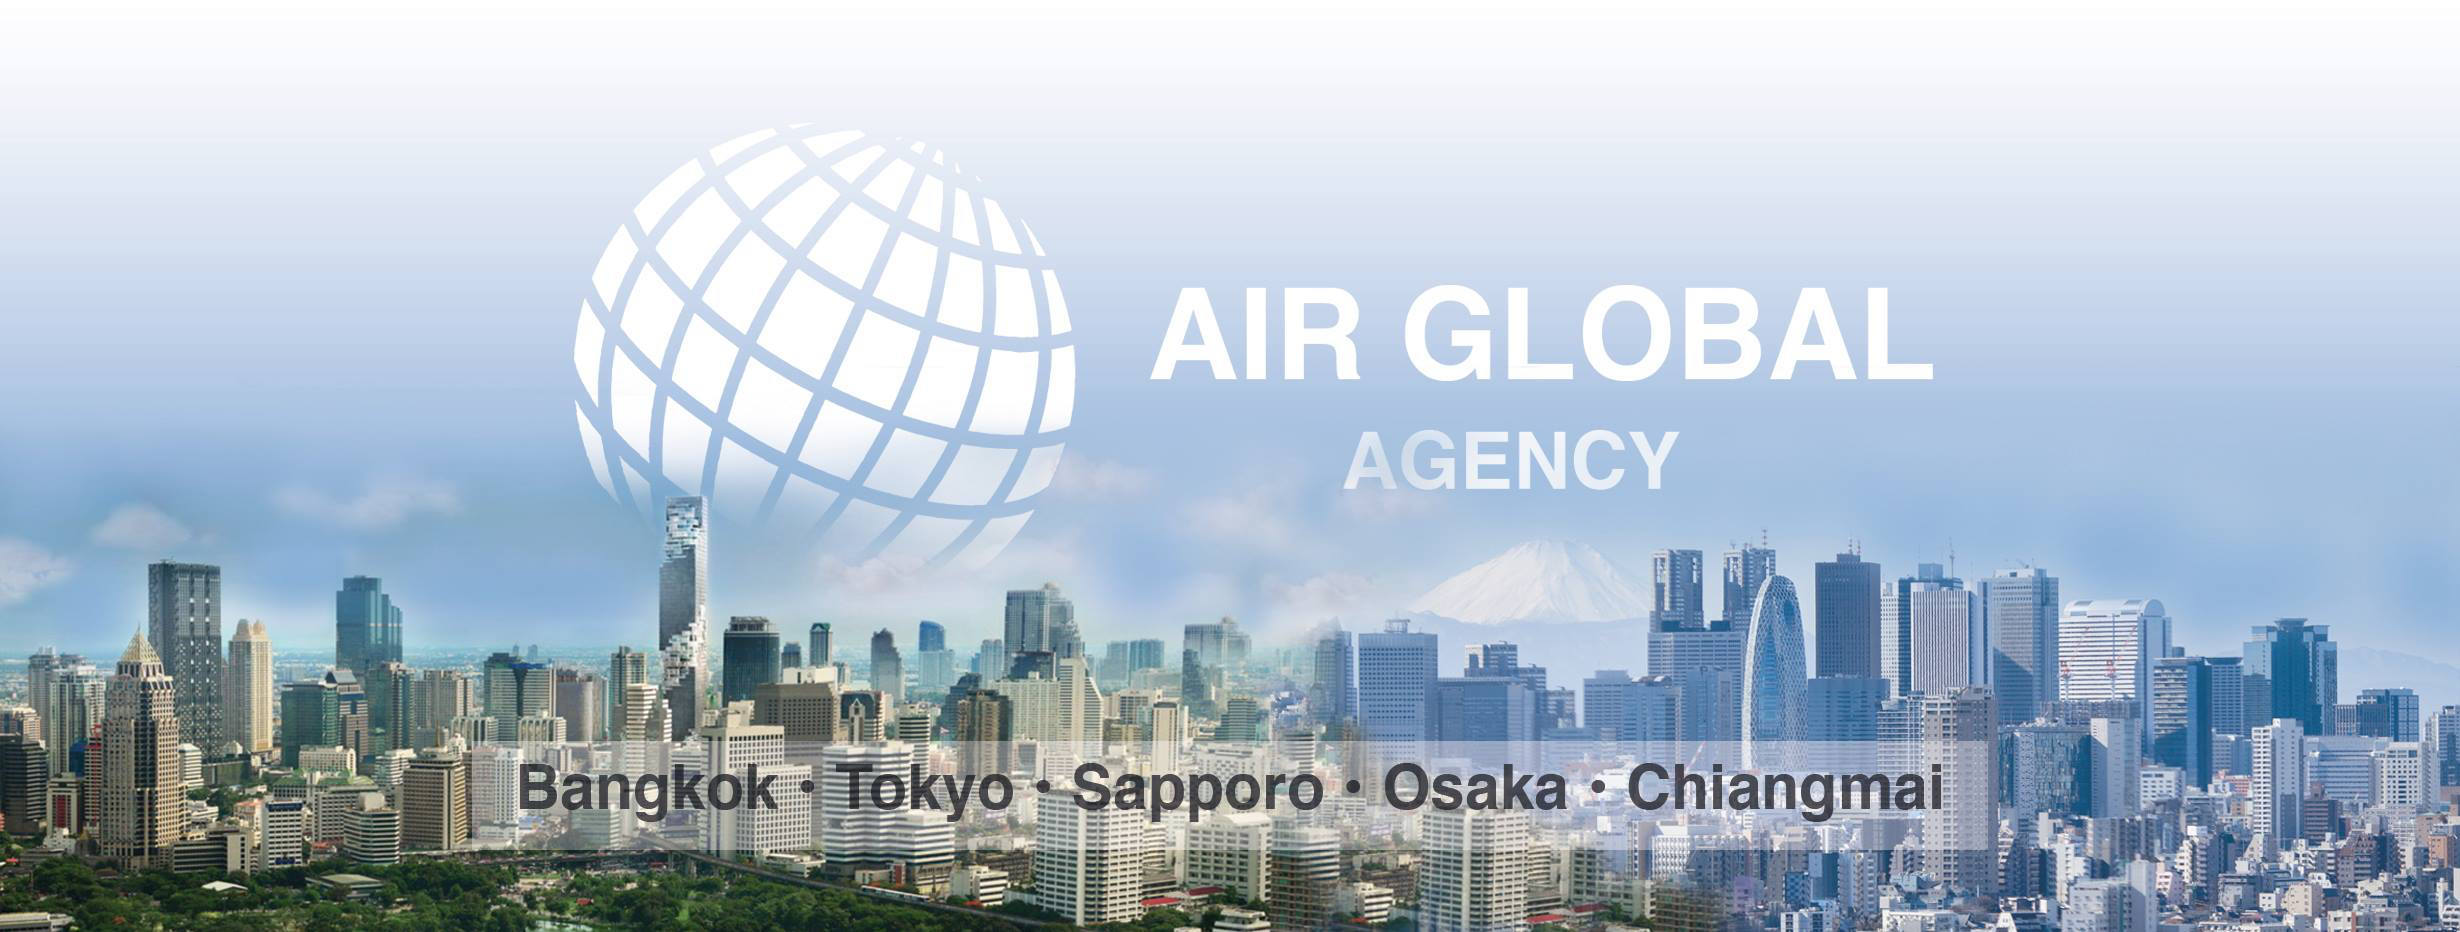 air-global-agency